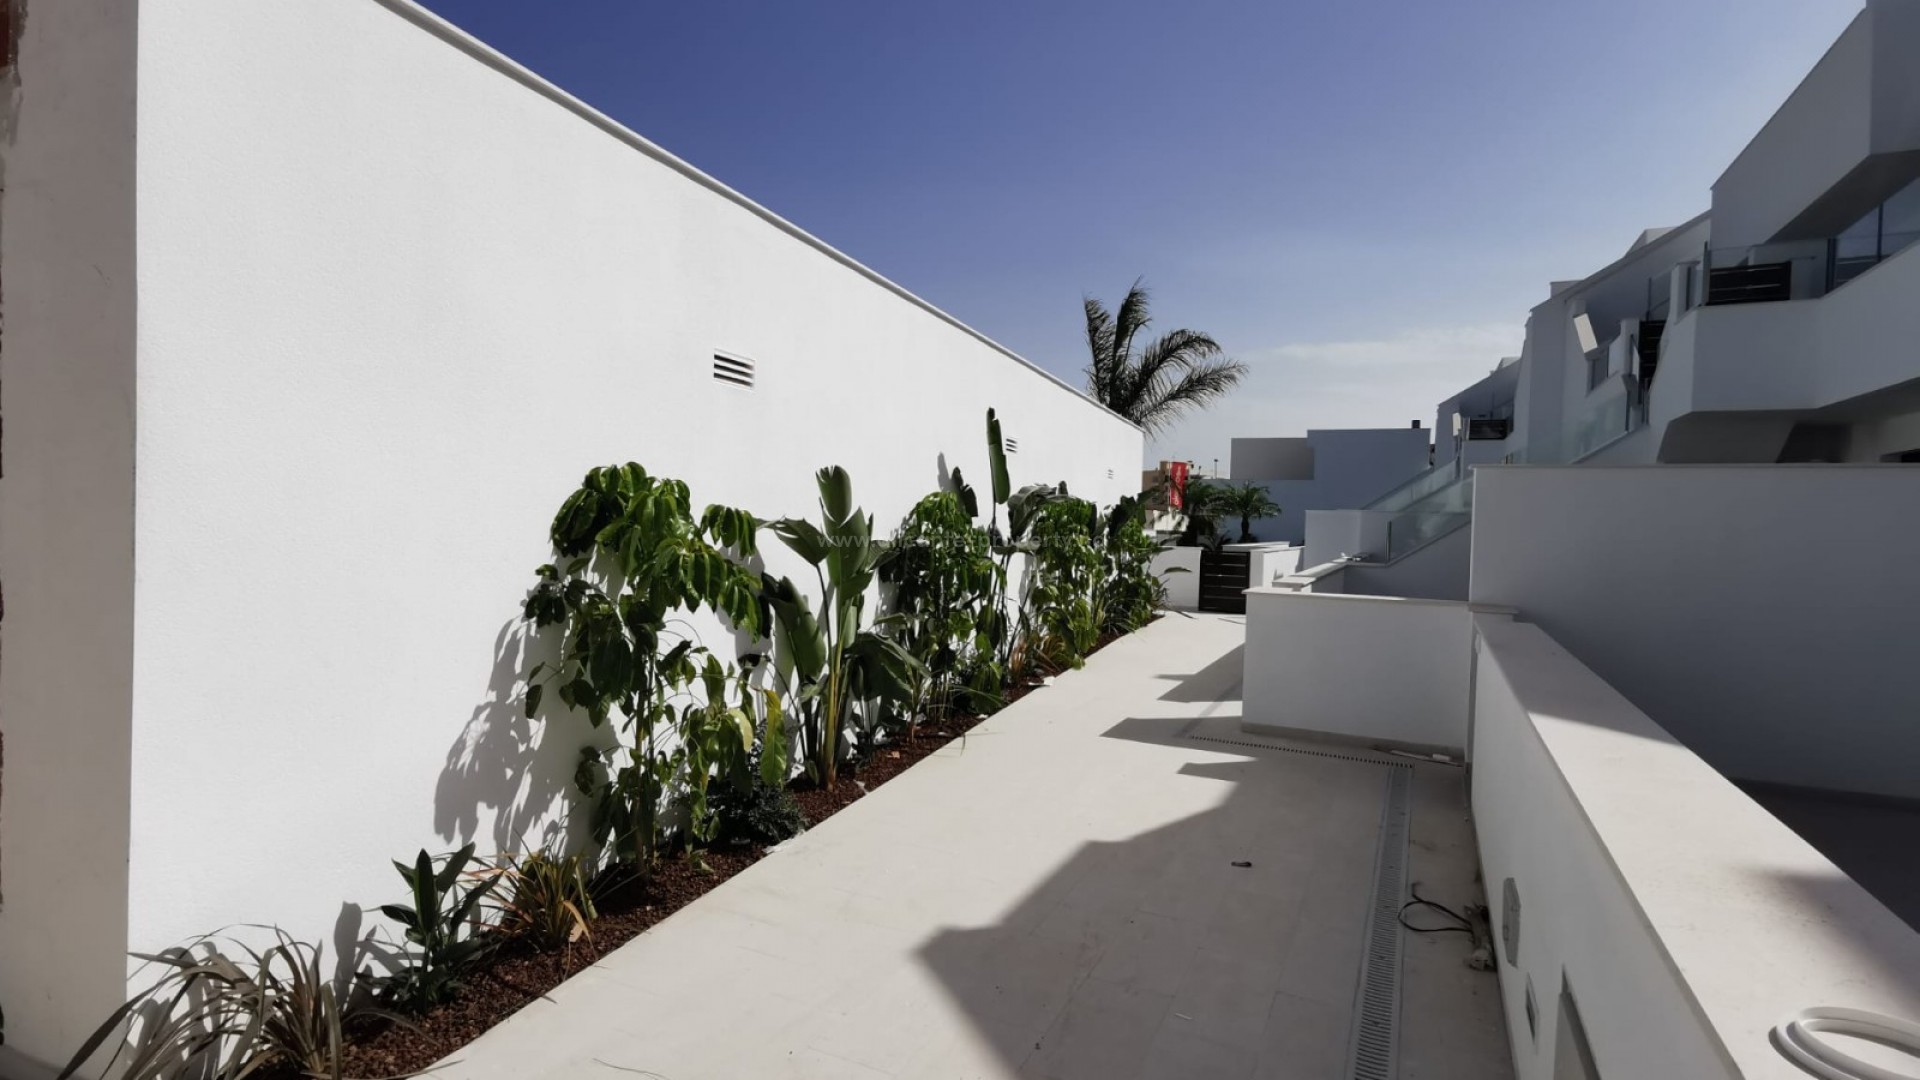 Eksklusive boligkomplekset med leiligheter i Pilar de Horadada, 2/3 soverom, 2 bad, stort privat solarium. Flott felles basseng